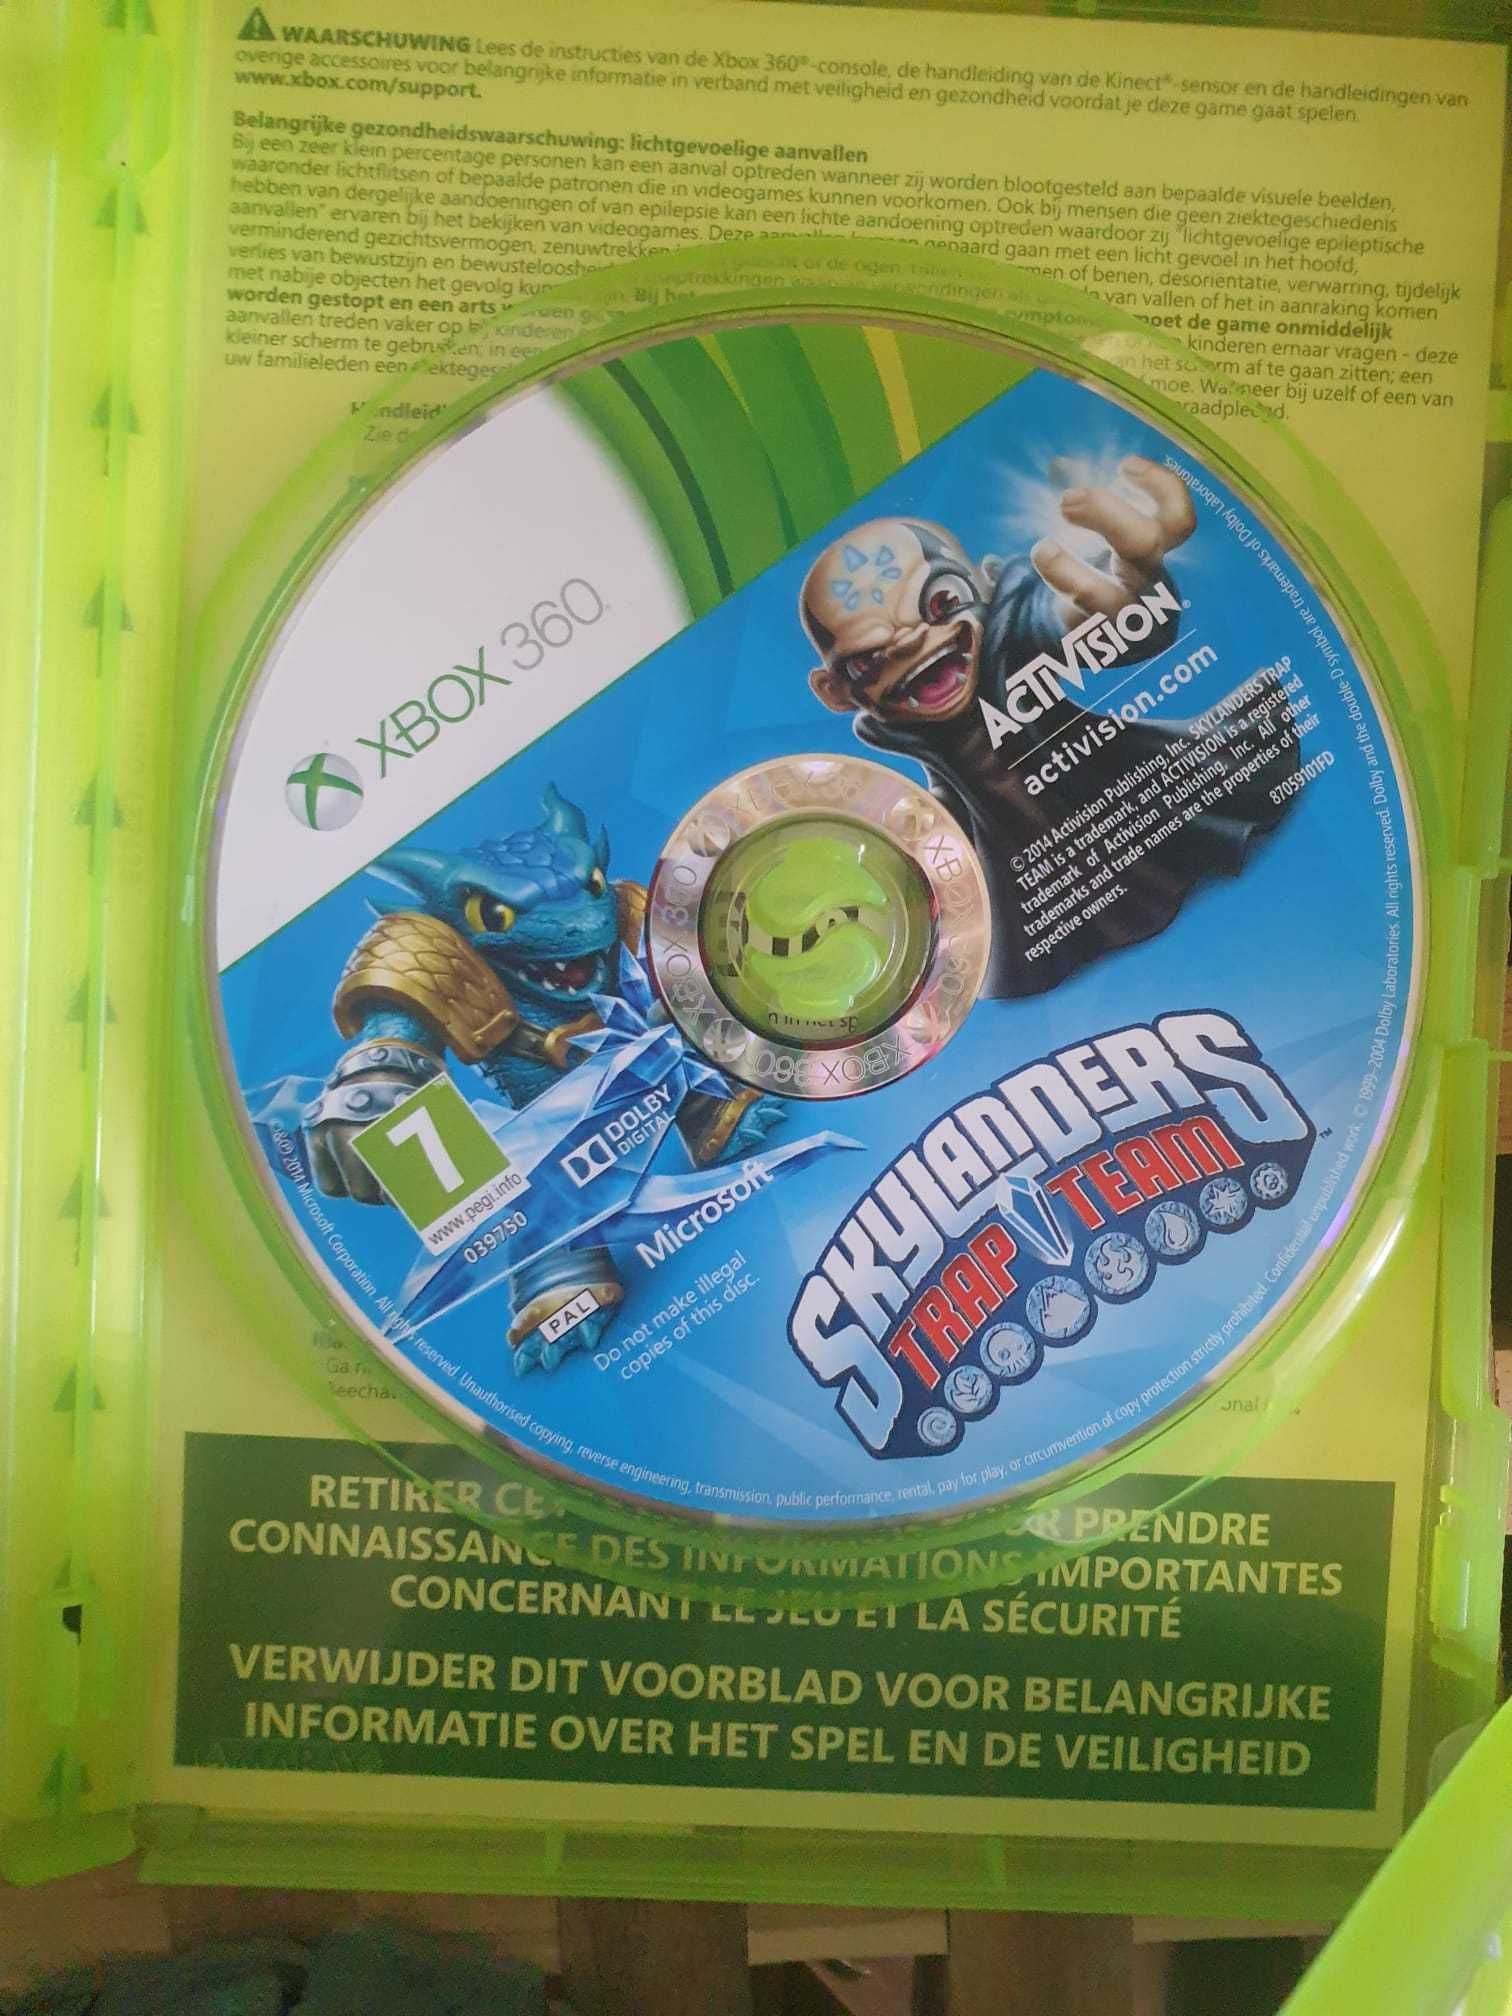 Skylanders zestaw 3 gry, 11 figurek i 2 portale na Xbox360